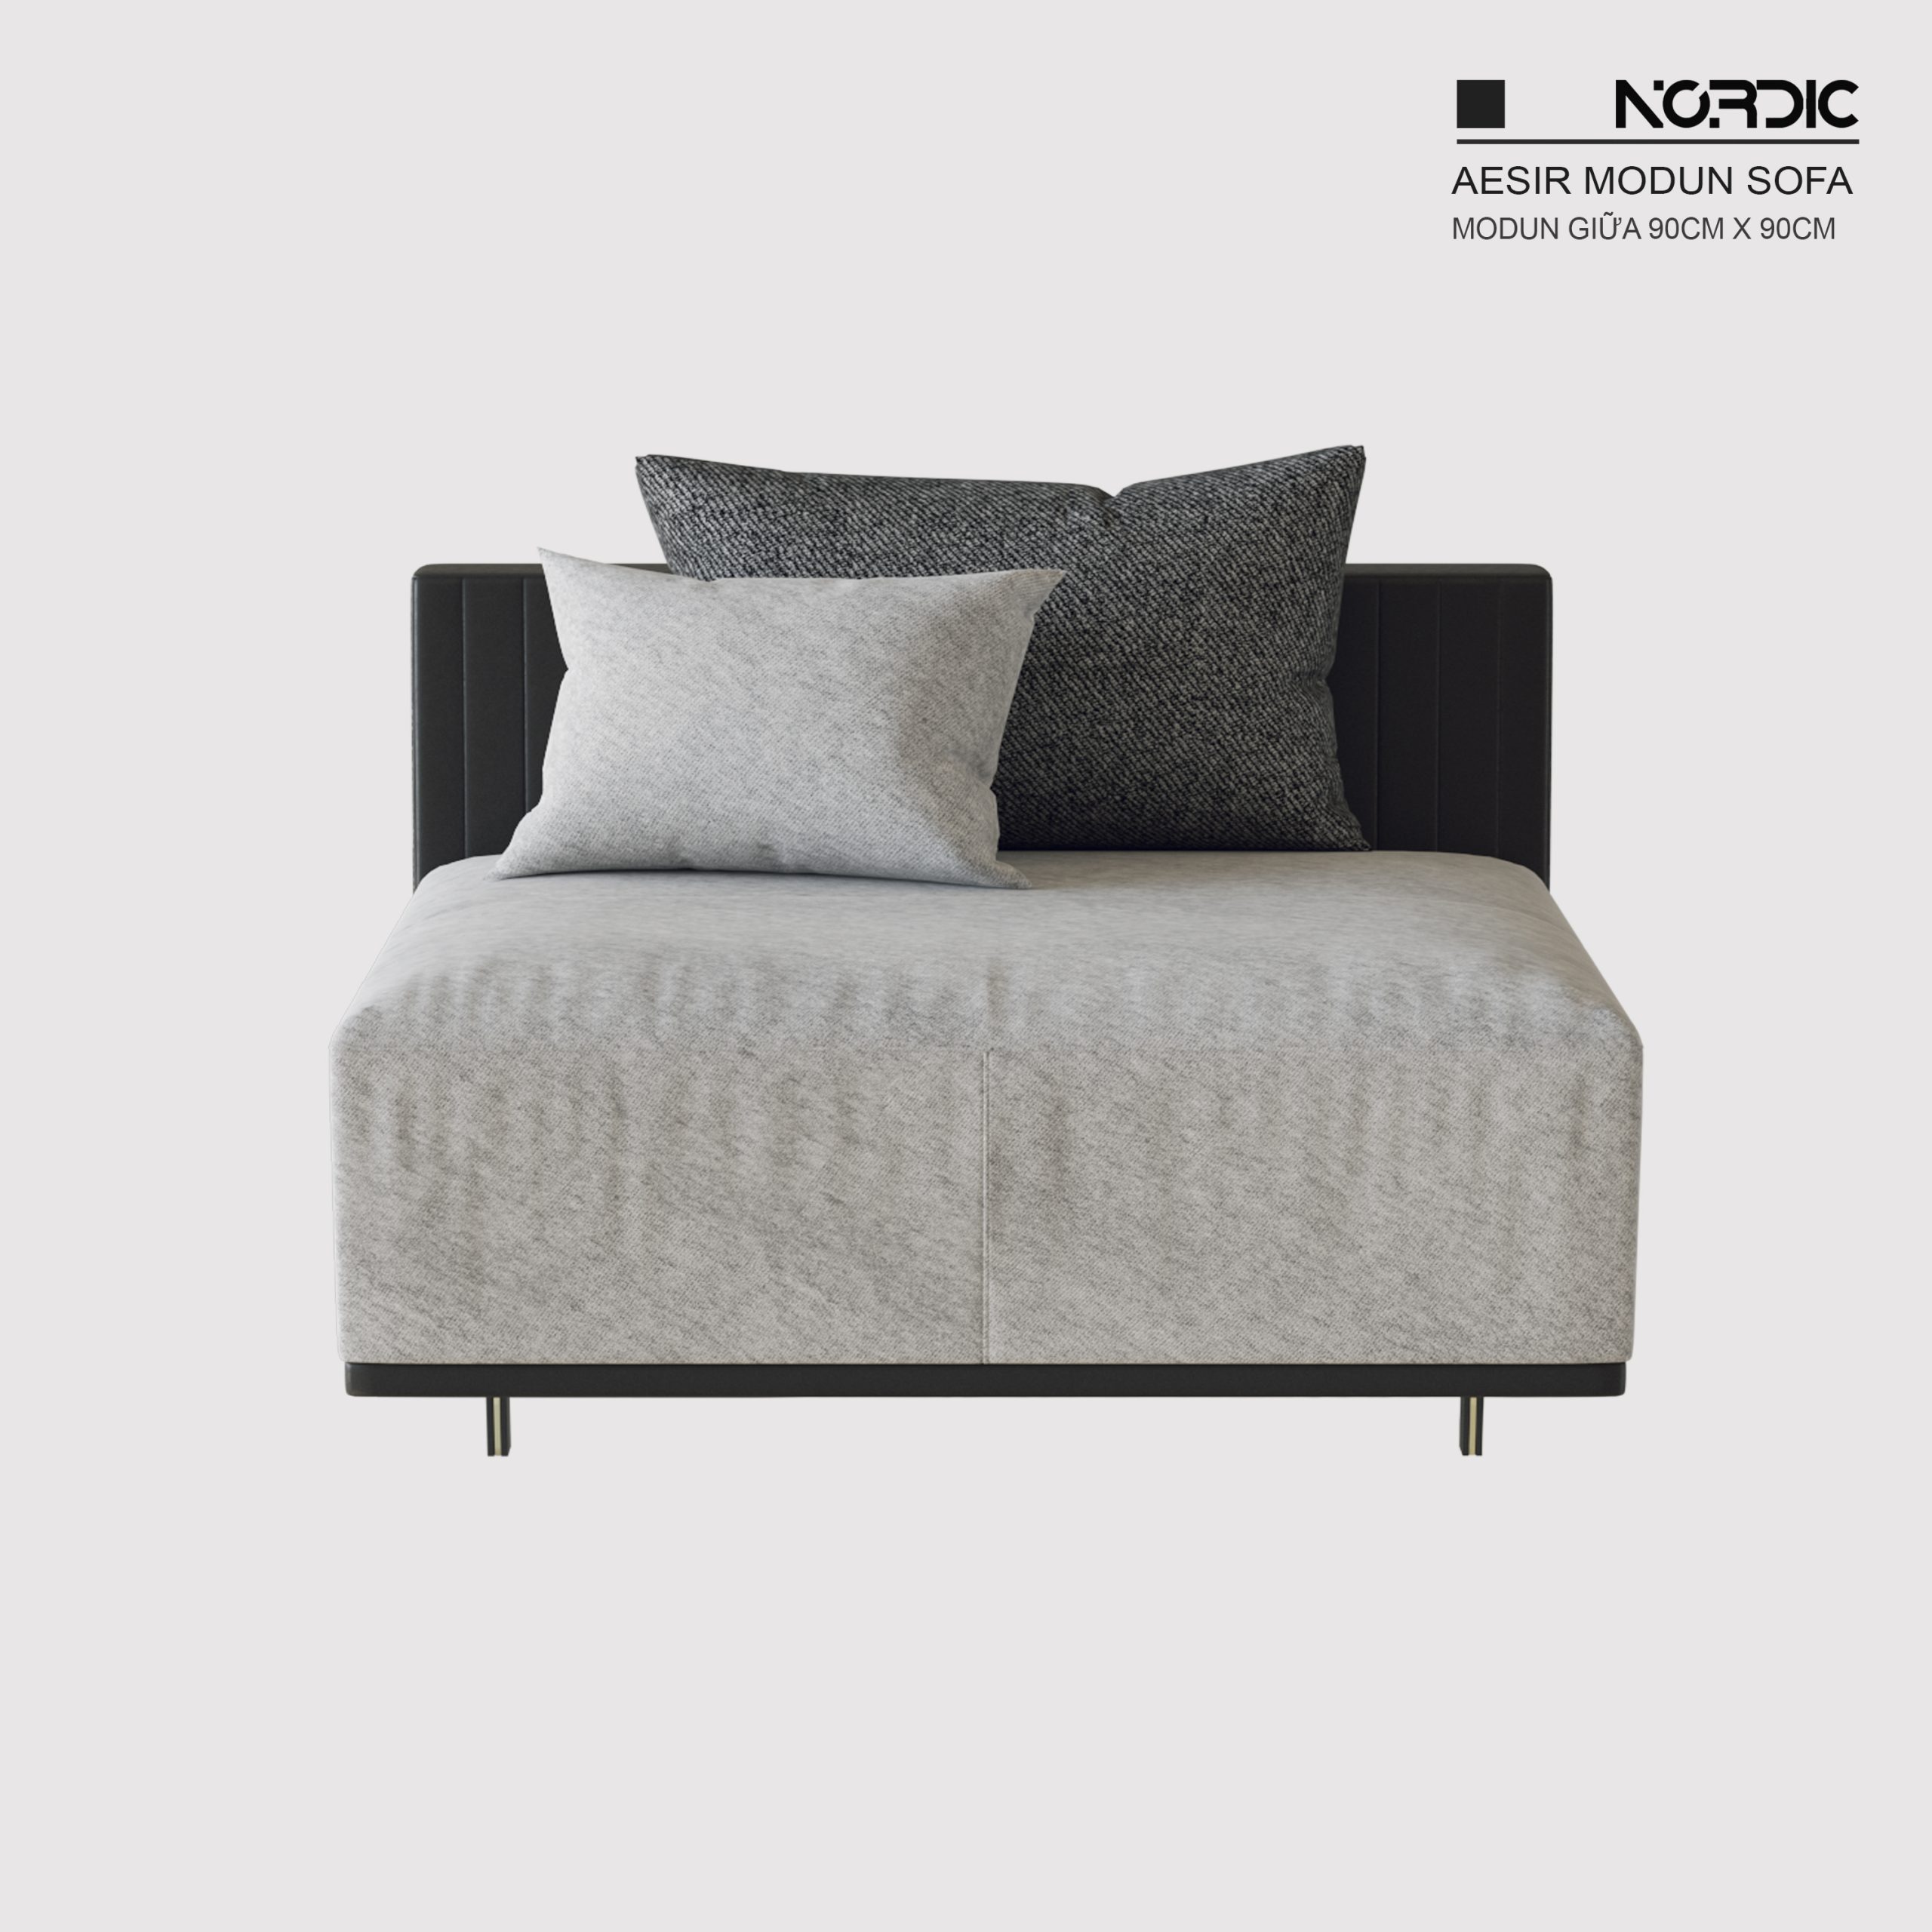 Sofa Aesir Modul giữa 0.9m bản Standard